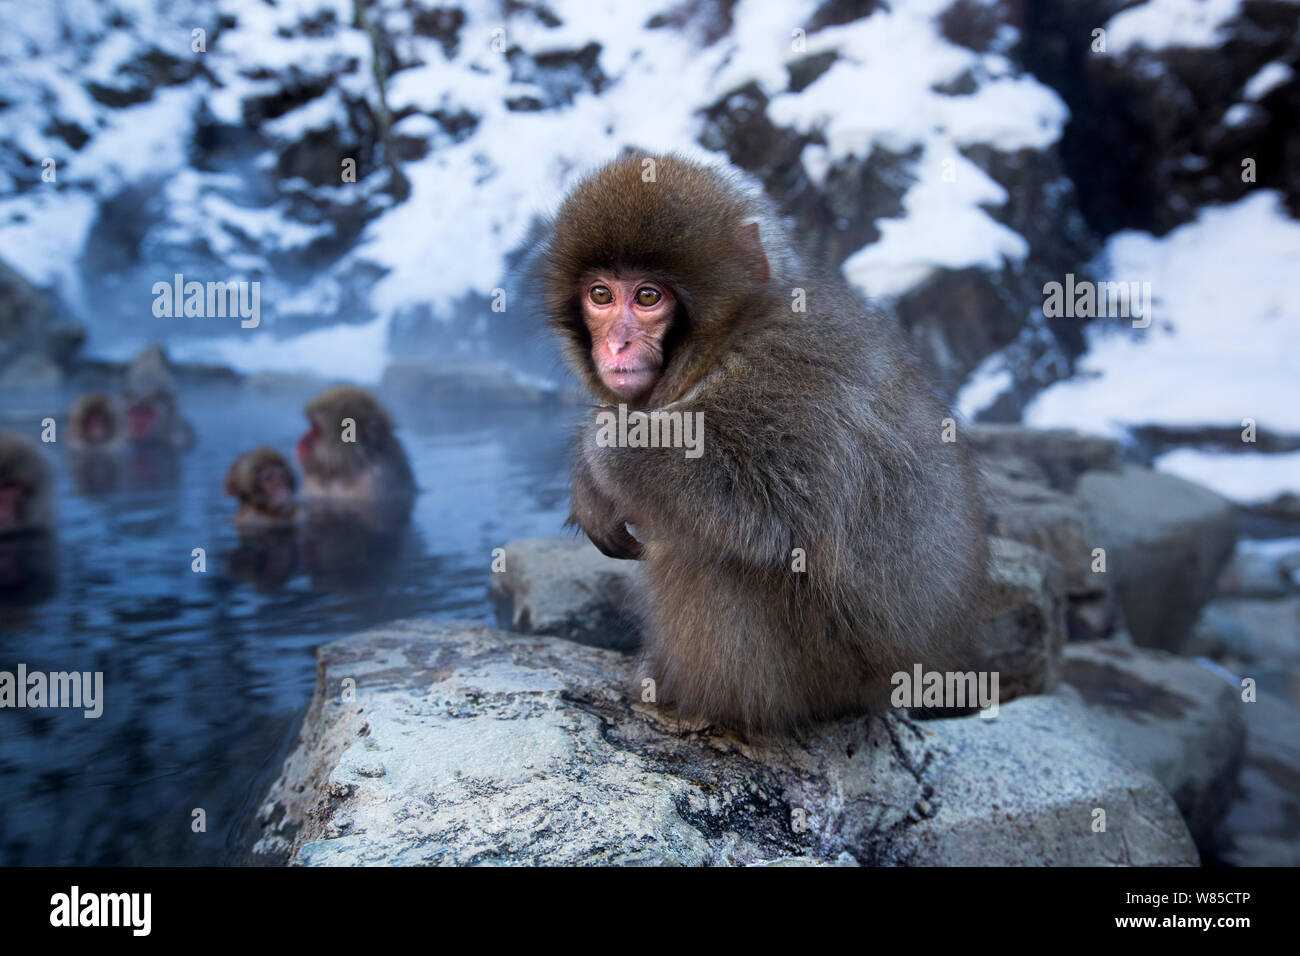 Macaque japonais (Macaca fuscata) bébé assis sur le bord de piscine. hotspring thermique Jigokudani Yean-Koen Parc National, Japon, février. Banque D'Images